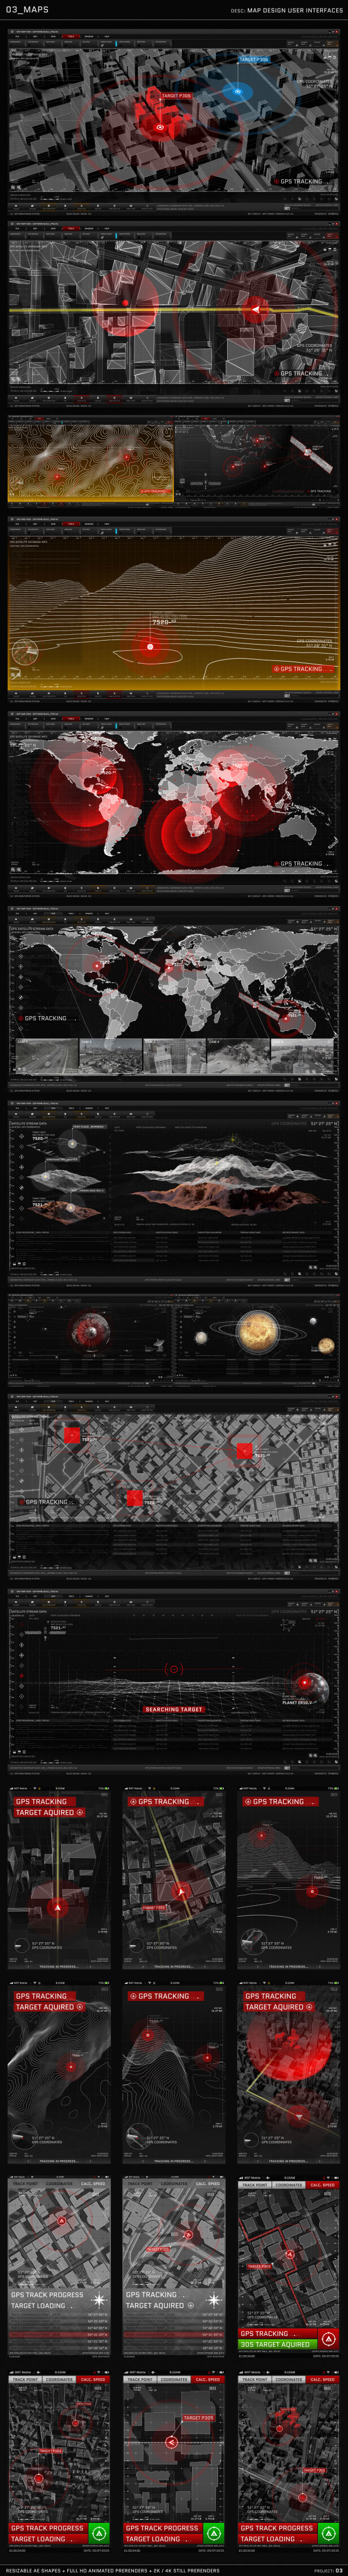 AE模板 HUD动画图形包电影电视游戏UI图形设计元素 | MAC影视后期资源站